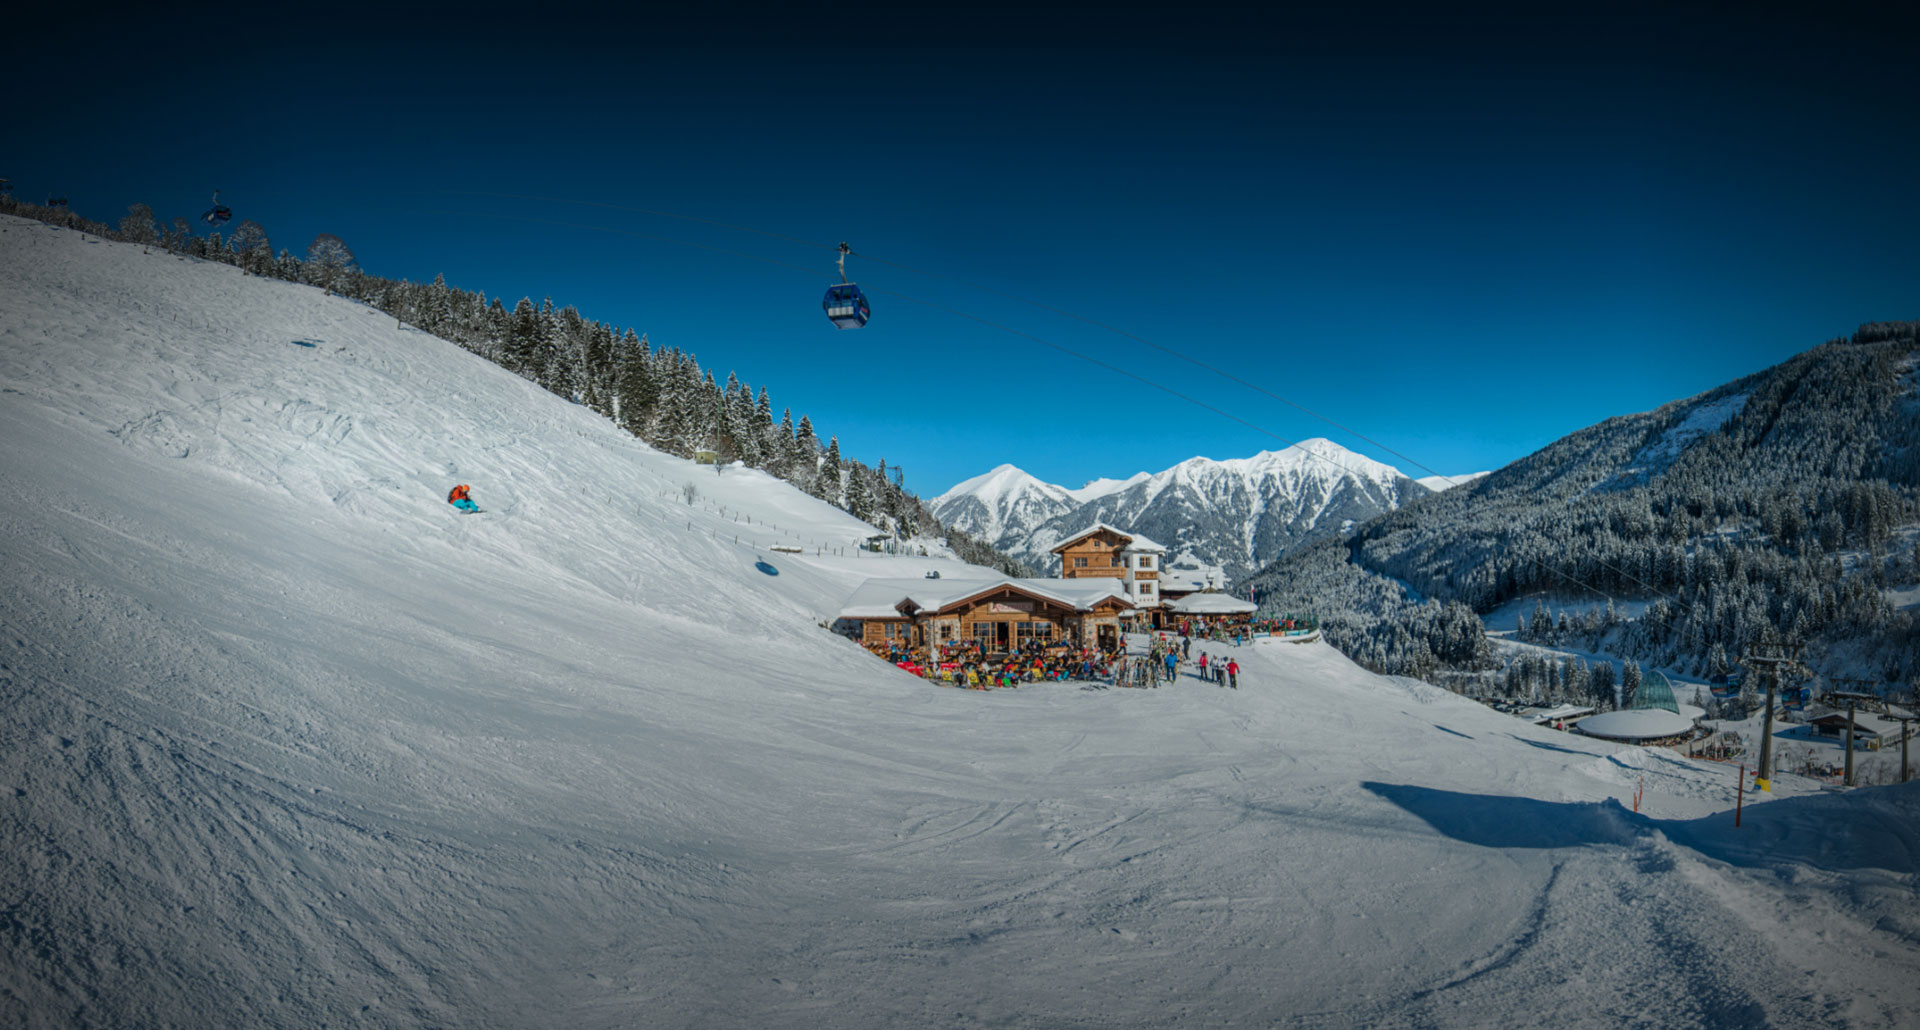 Skihütte, Restaurant & Après-Ski in Bad Hofgastein, Salzburger Land